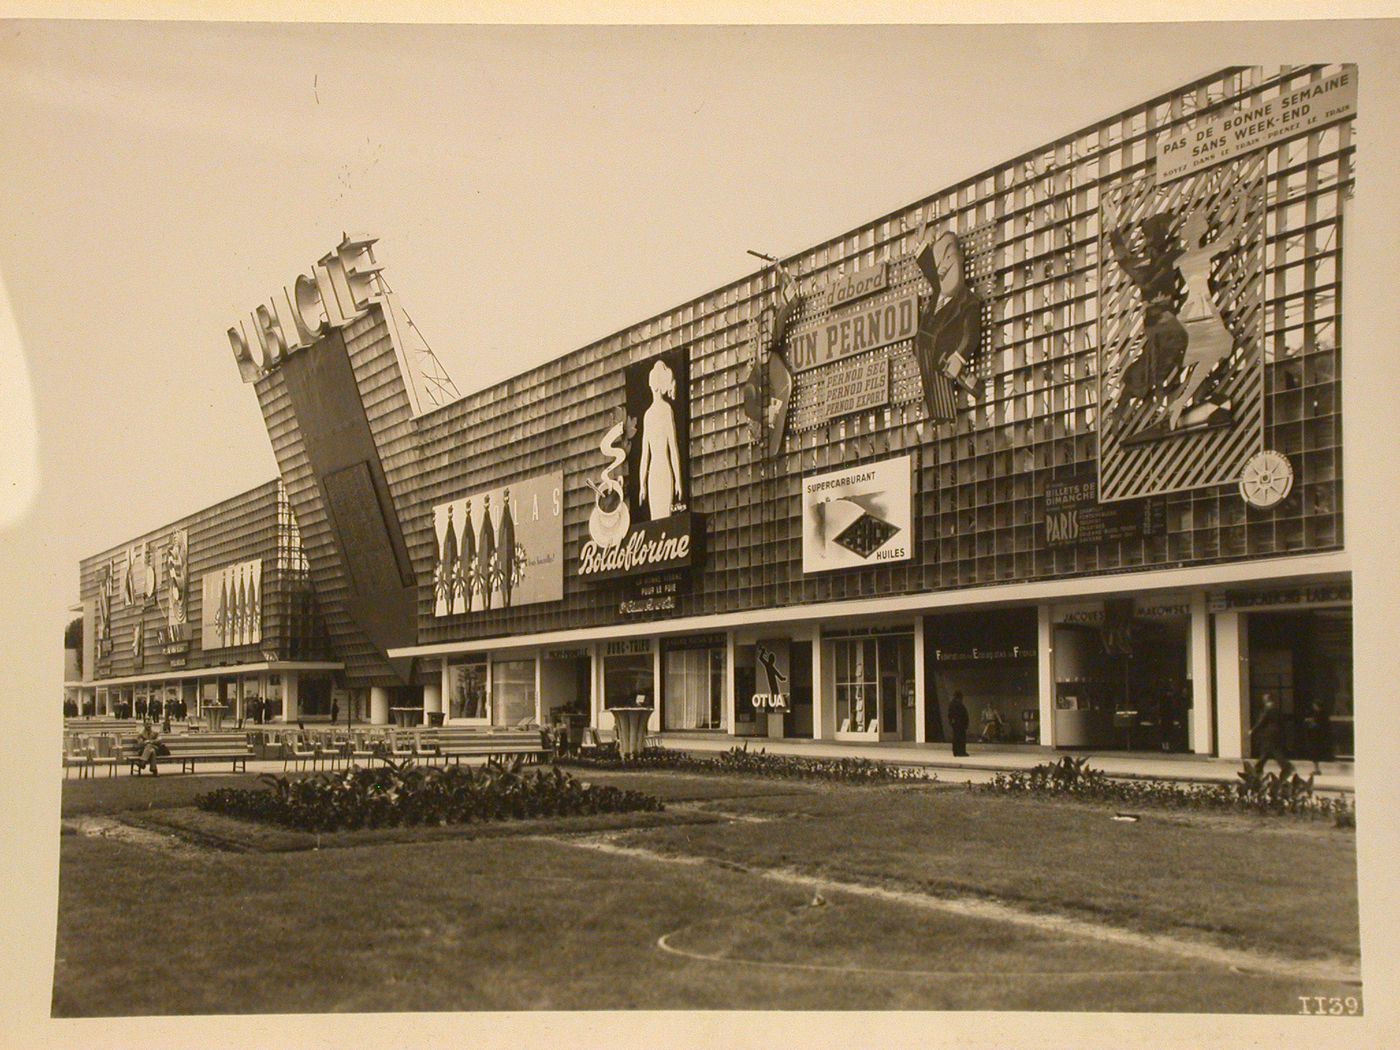 View of the Pavillon de la Publicité, 1937 Exposition internationale, Paris, France